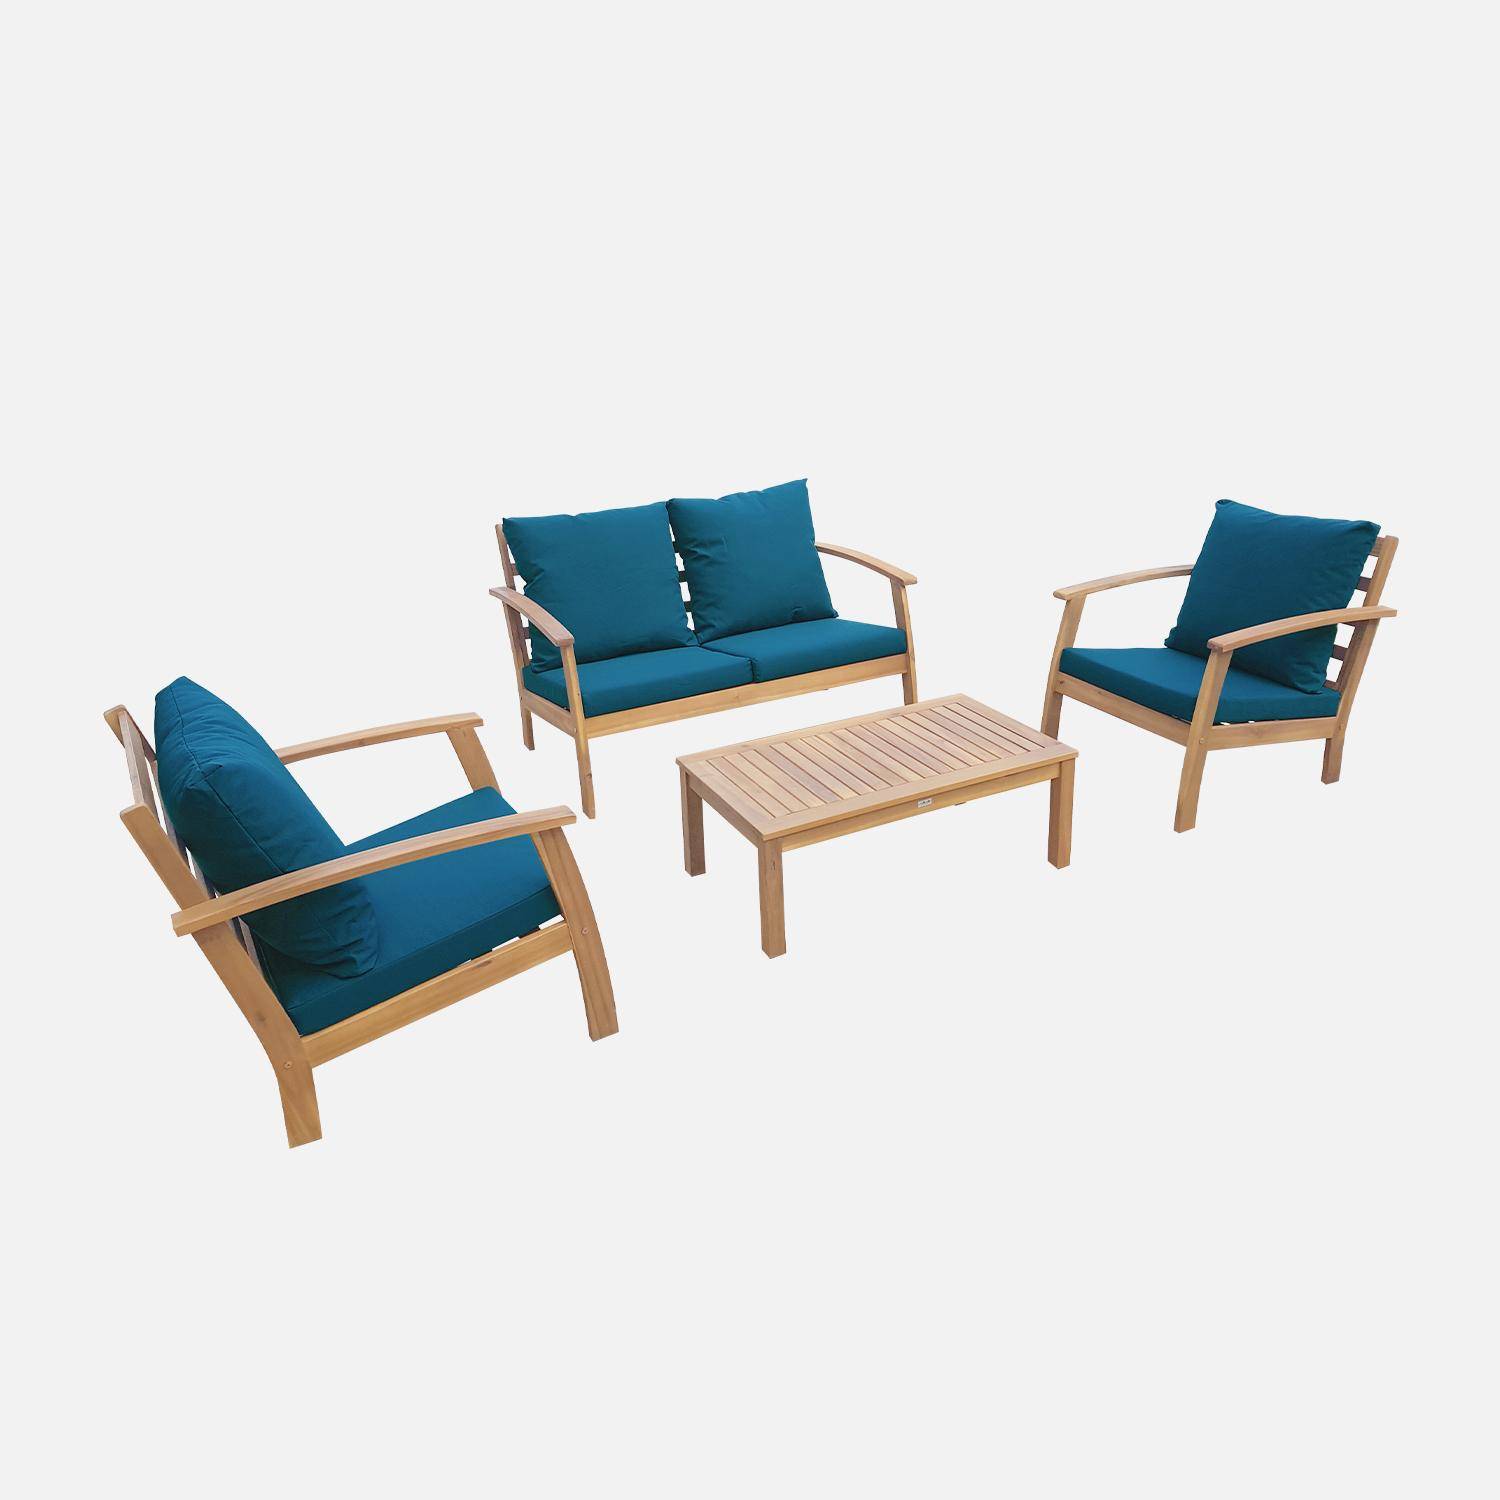 Salon de jardin en bois 4 places - Ushuaïa - Coussins bleu canard, canapé, fauteuils et table basse en acacia, design Photo2